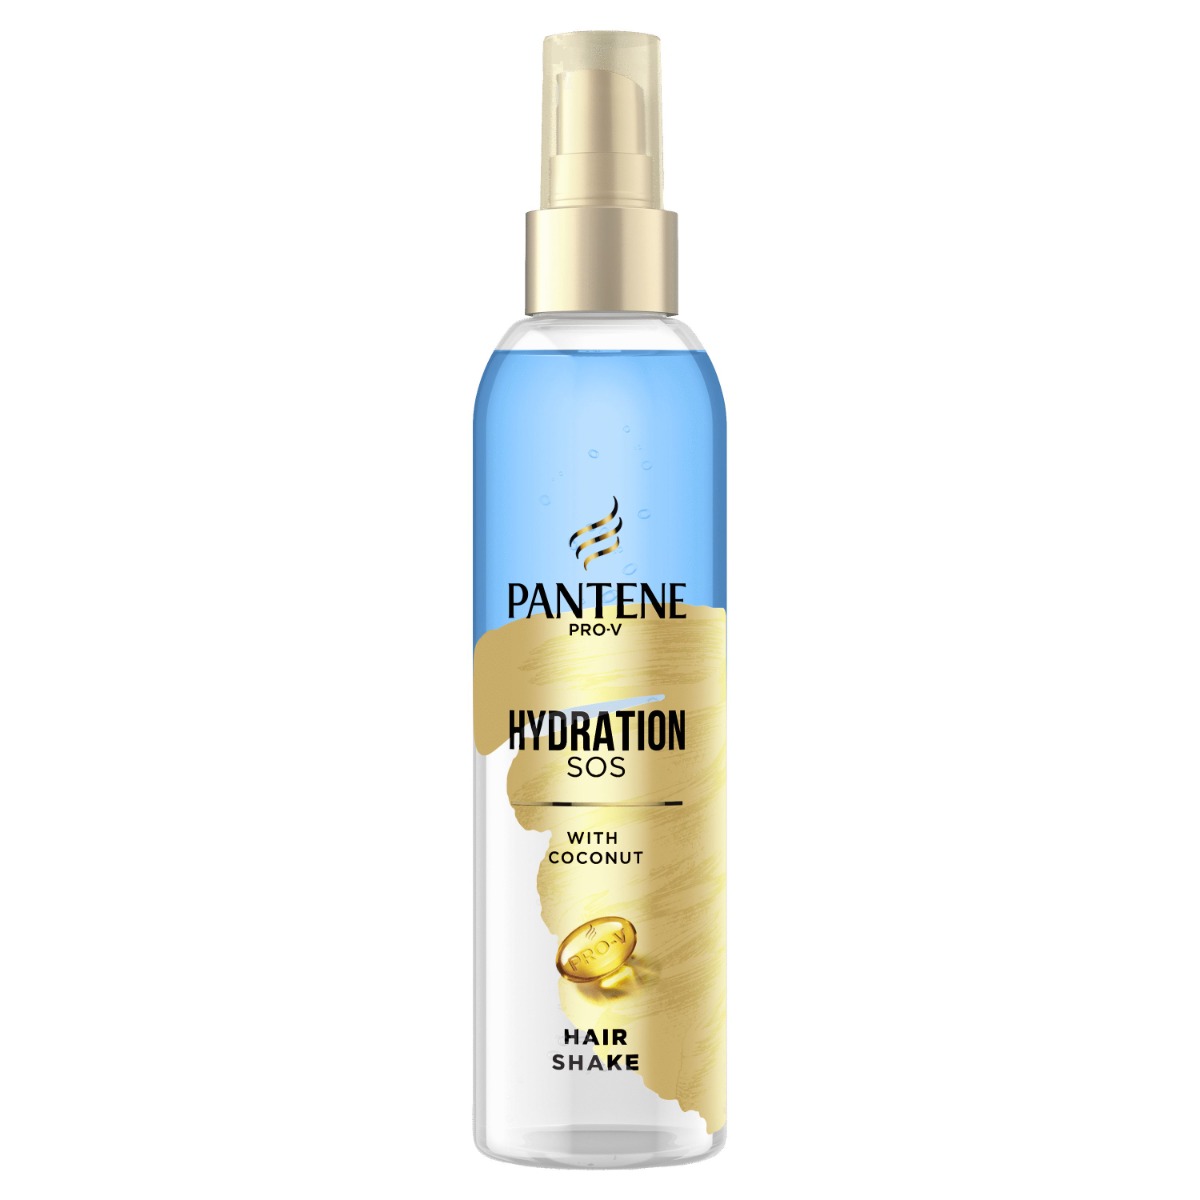 Pantene Pro-V SOS Hydratation sprej na vlasy 150 ml Pantene Pro-V